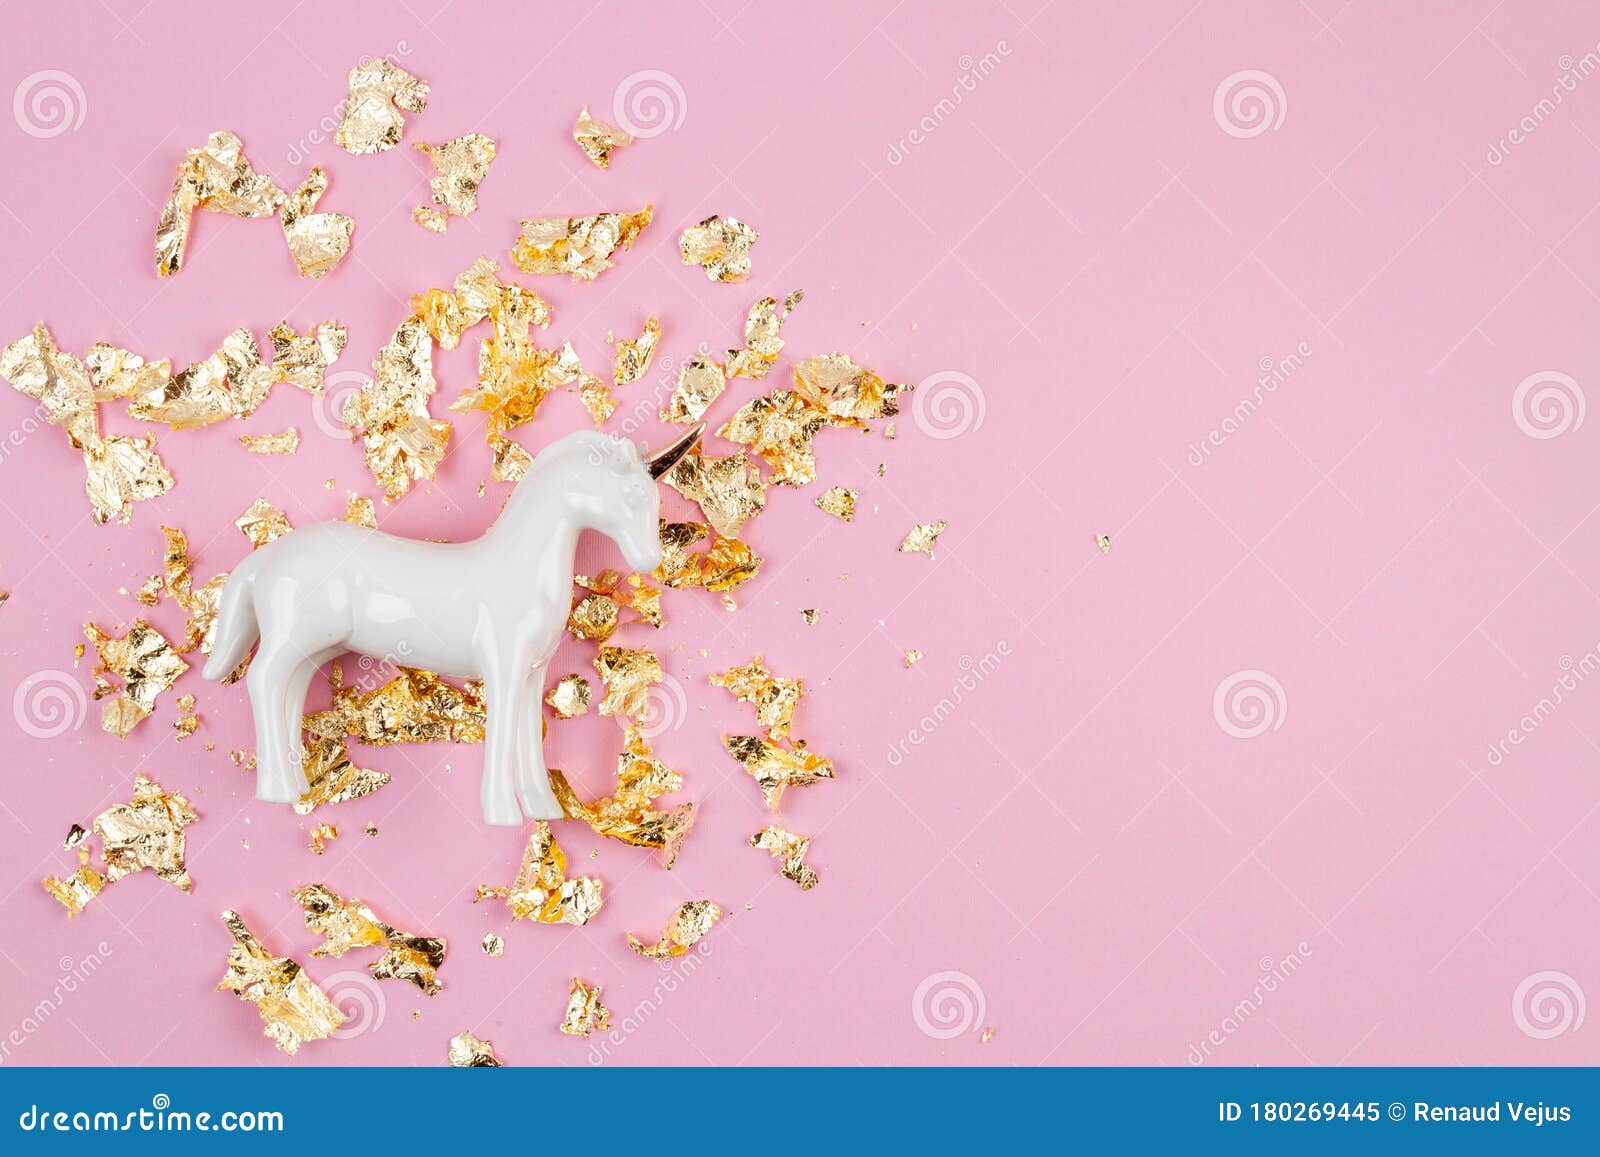 Unicorn: Đây chắc chắn là hình ảnh ngựa thần đáng yêu nhất mà bạn từng nhìn thấy! Nhiều màu sắc và vô số kích cỡ khác nhau cho phép bạn chọn ngựa thần hoàn hảo cho phòng của bạn.